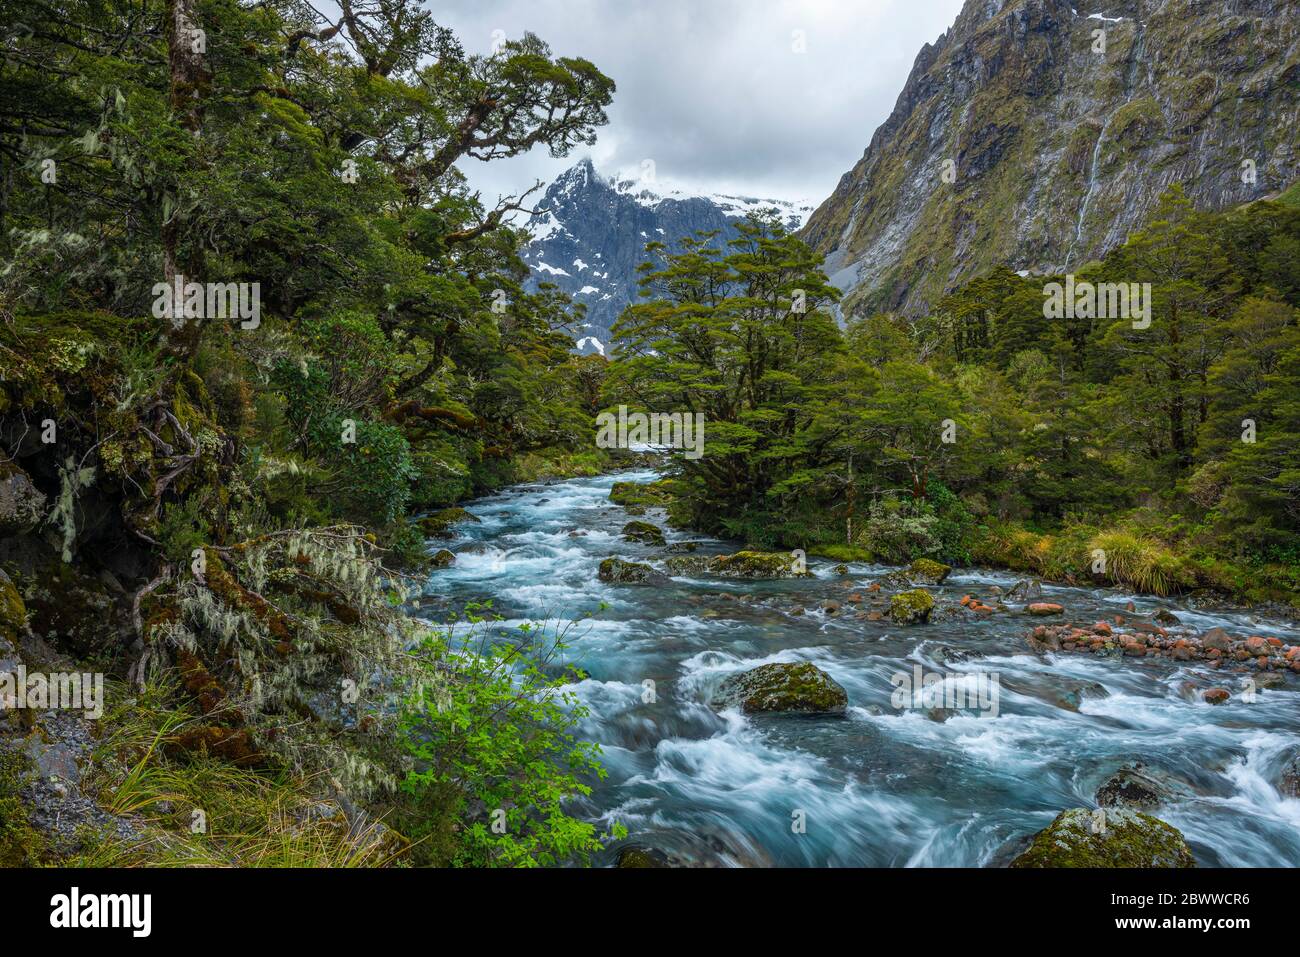 Nouvelle-Zélande, Southland, te Anau, longue exposition de la rivière Hollyford Banque D'Images